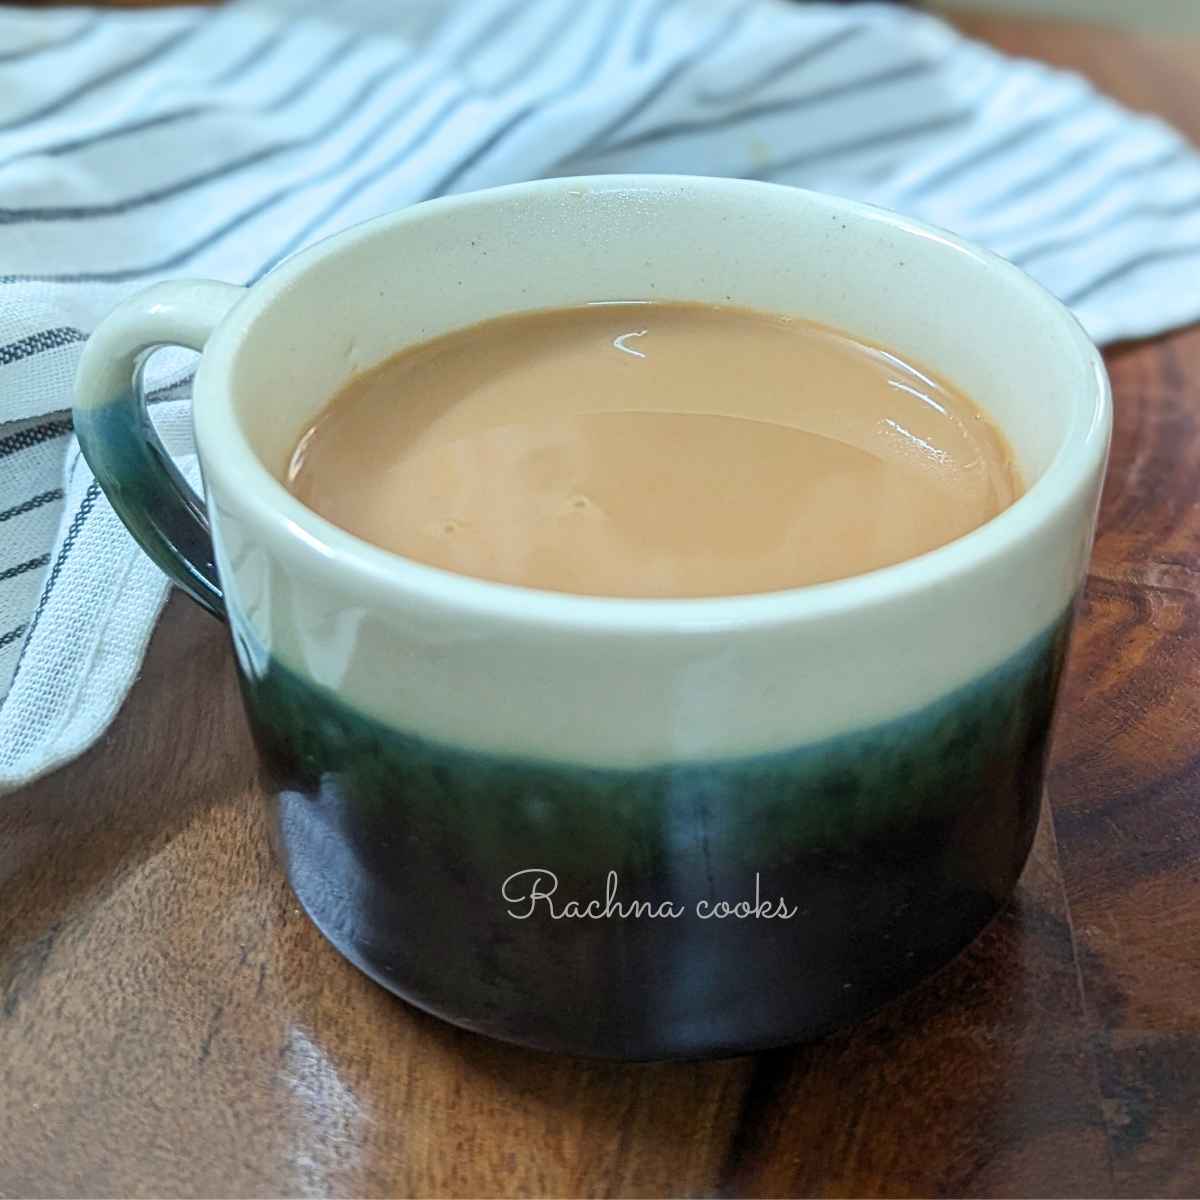 A mug of lemongrass tea.